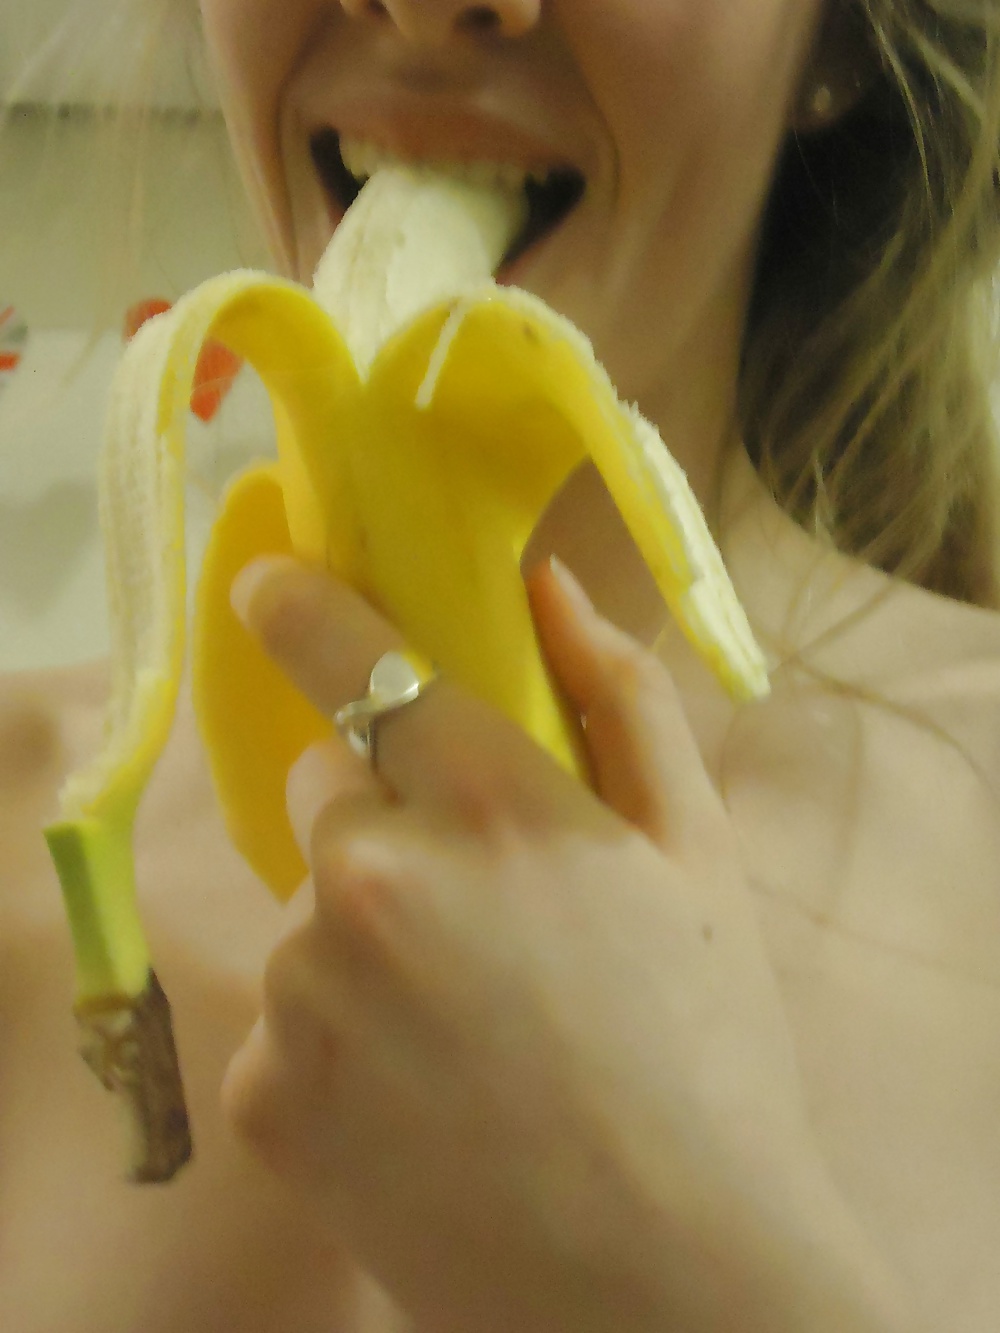 Sexy ragazza amatoriale pallida succhia una banana
 #34429750